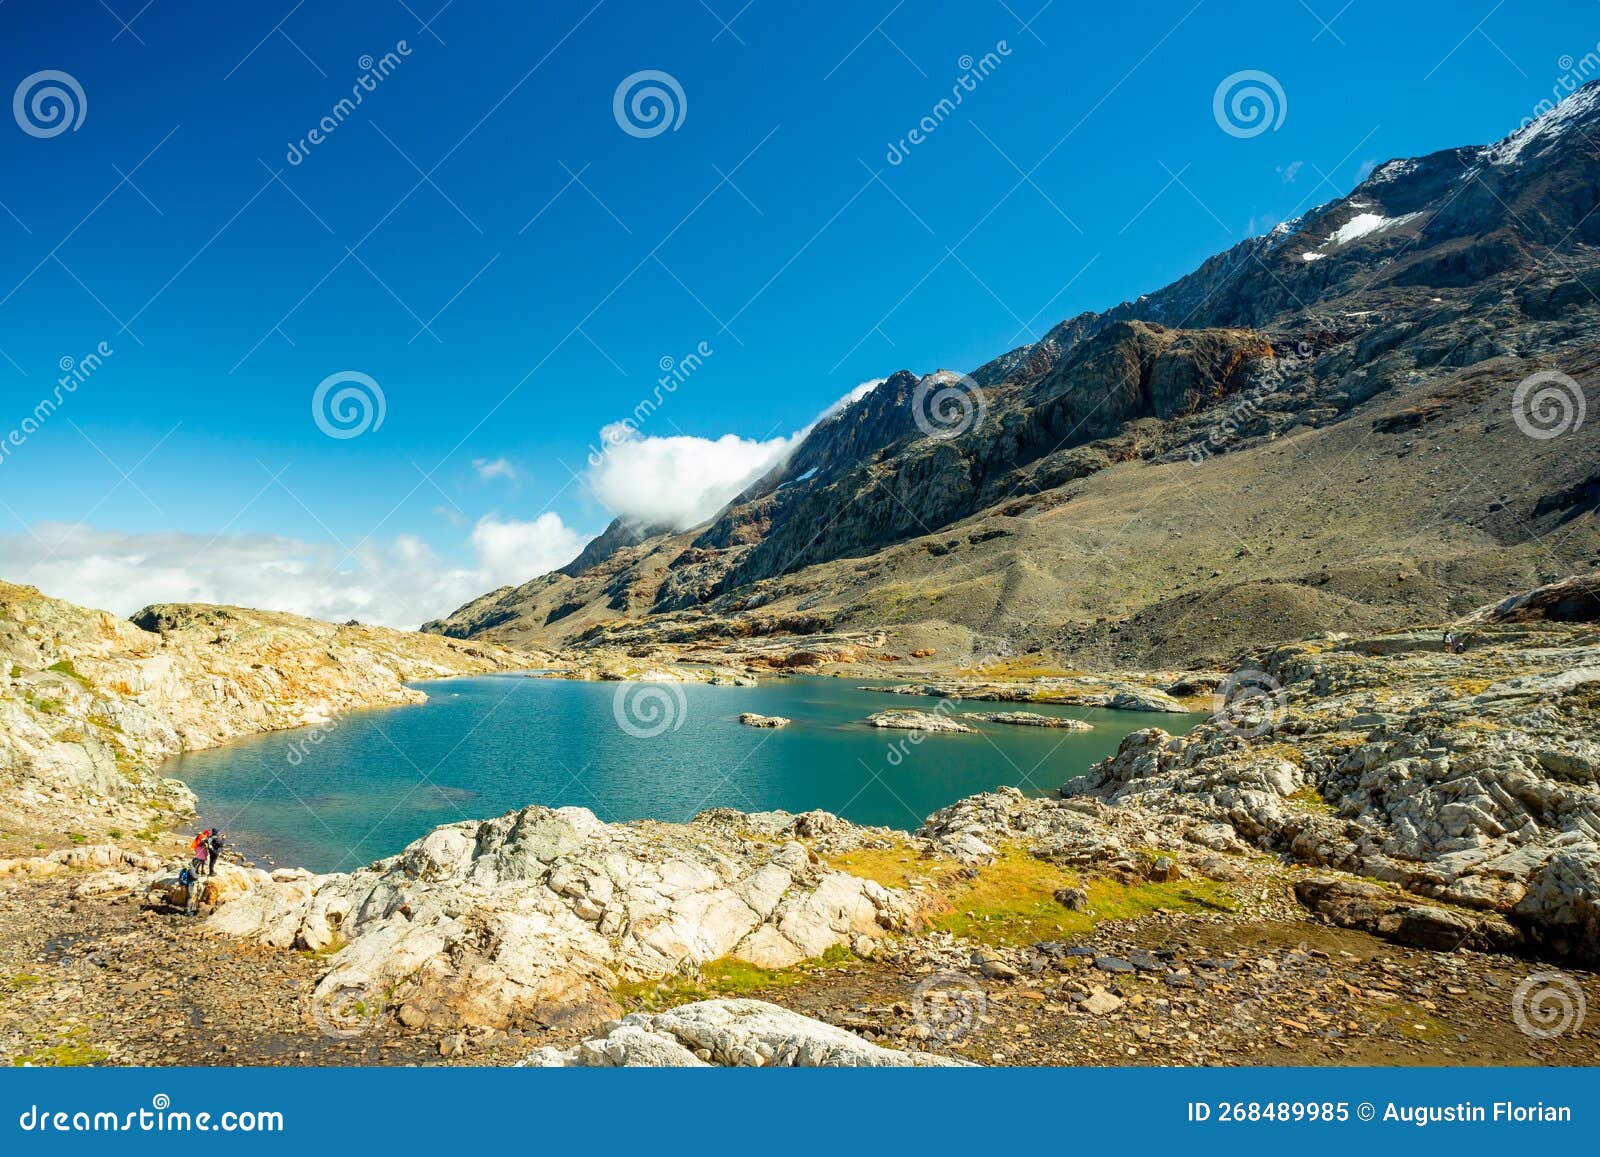 lac du milieu in alpe d`huez region